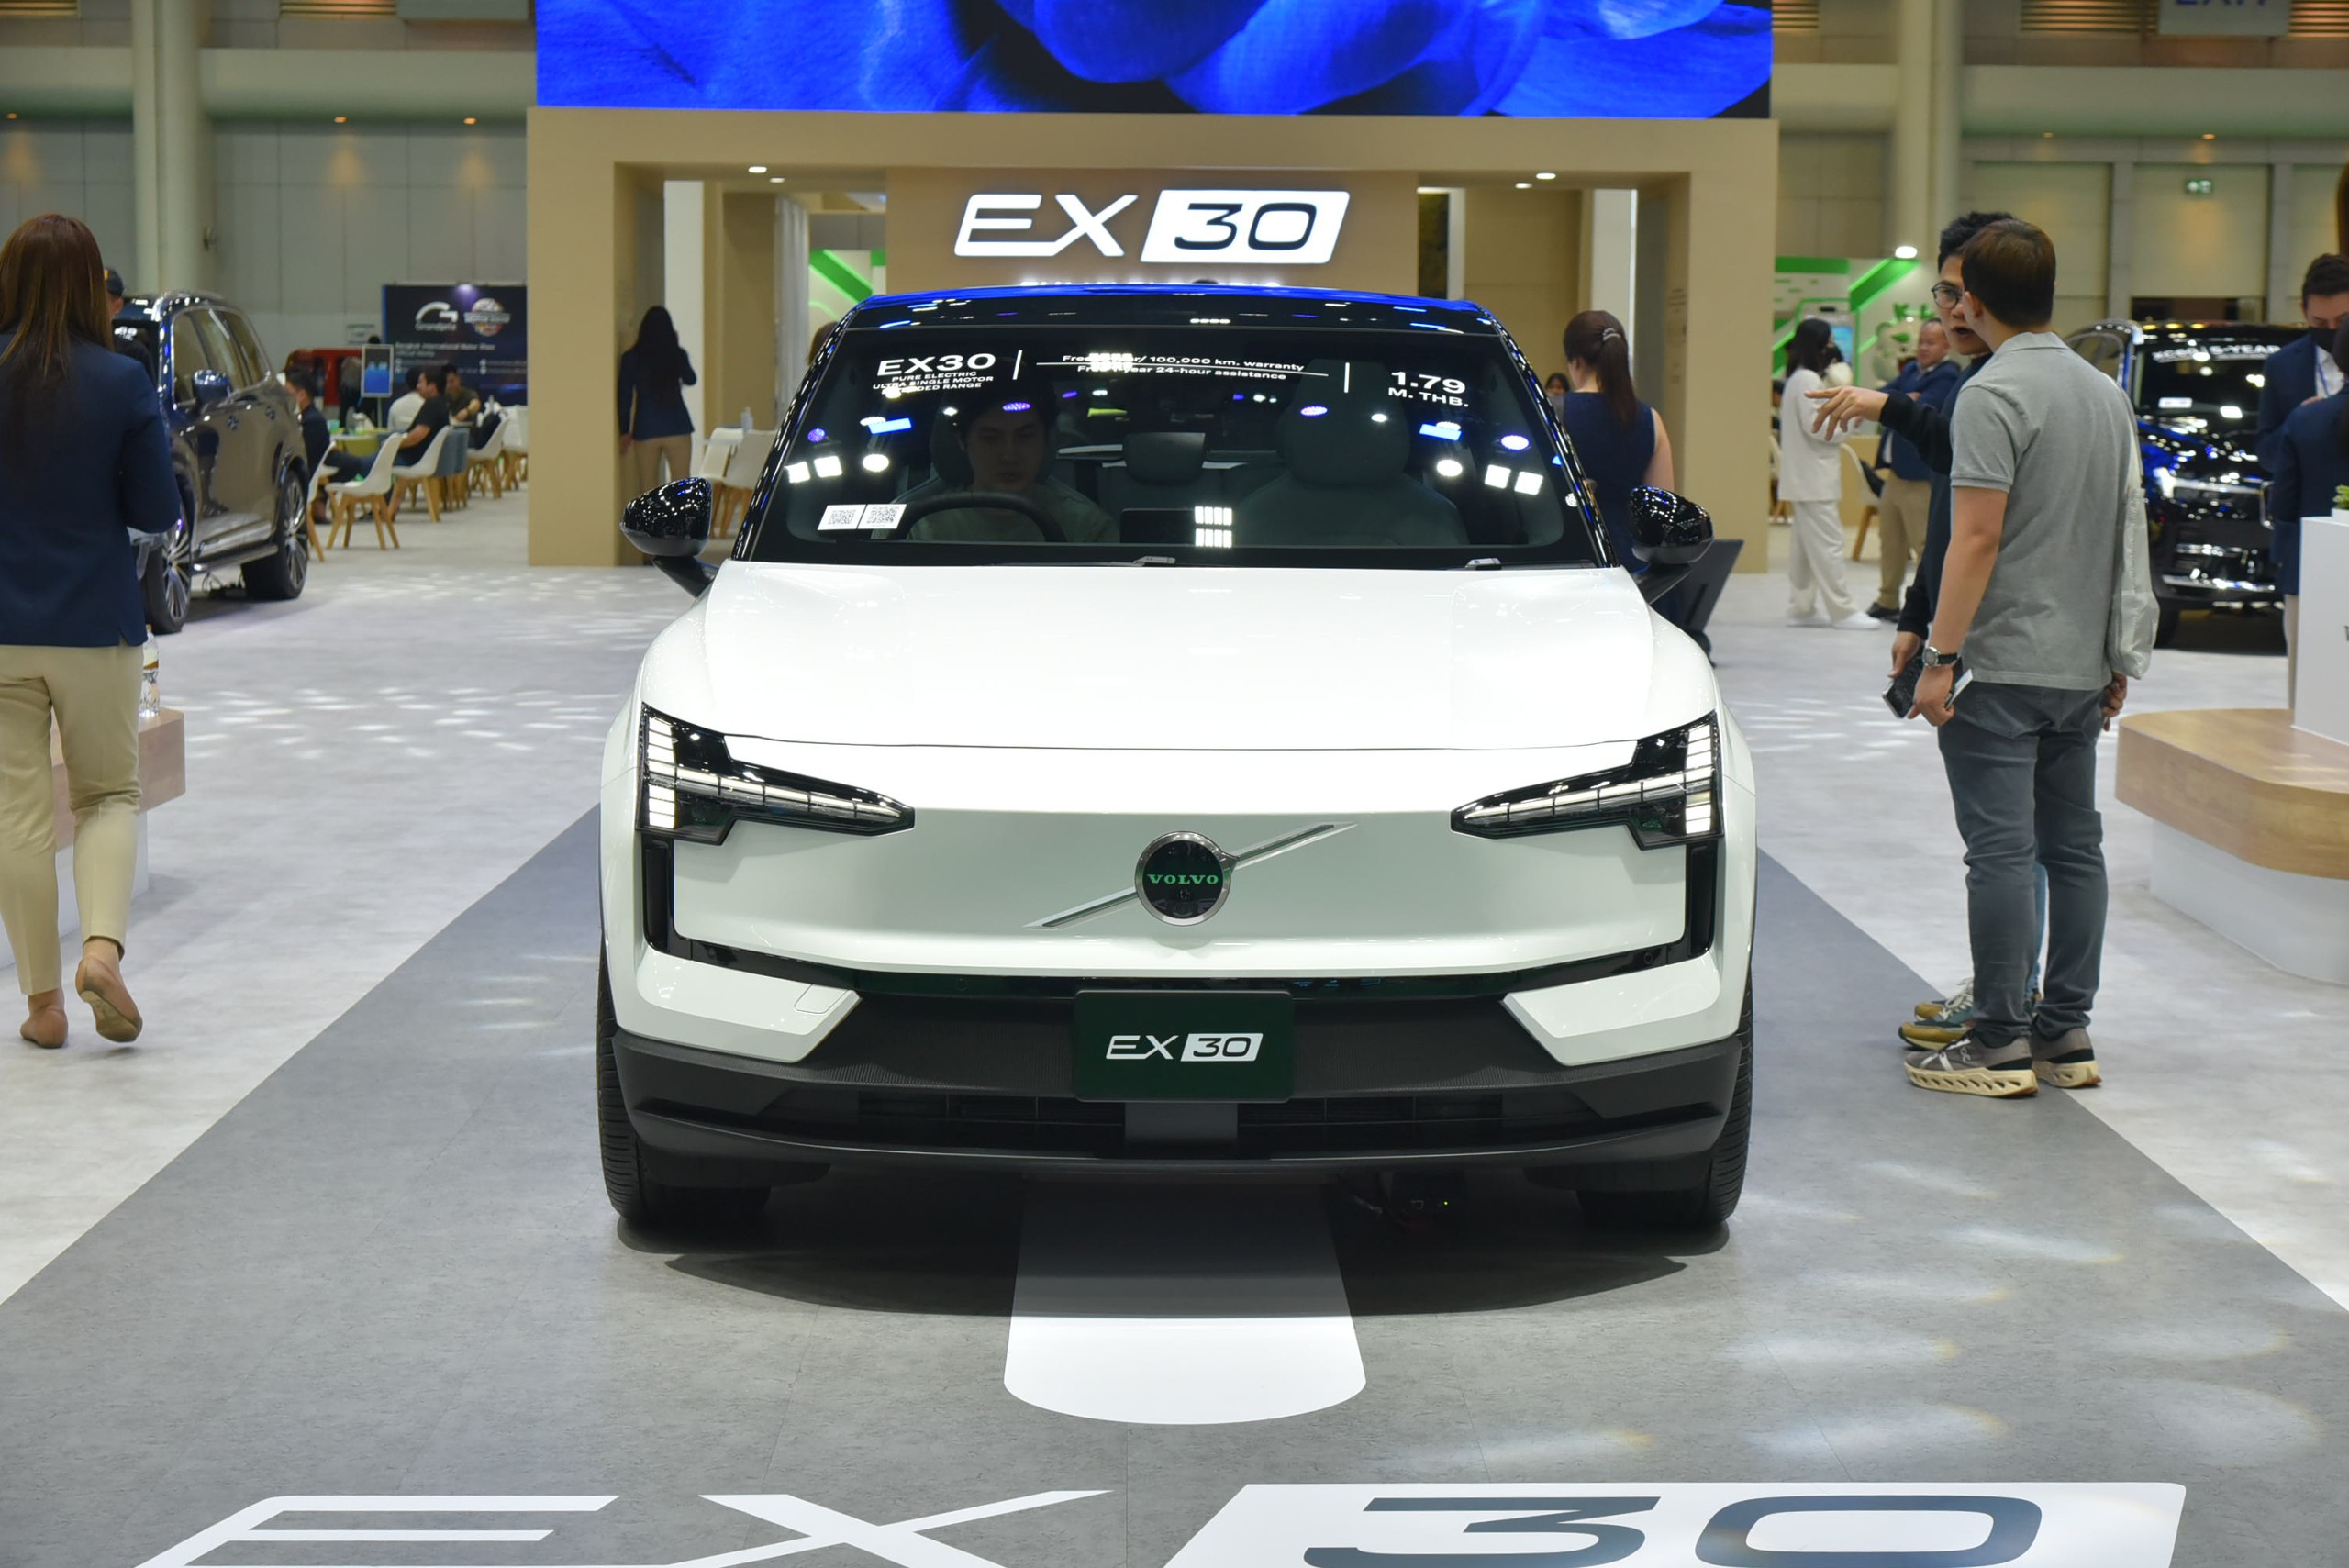 Xem trước Volvo EX30 tại BIMS trước khi về Việt Nam: Giá quy đổi hơn 1 tỷ, nhỏ, chật, mạnh, nhiều công nghệ - ảnh 8